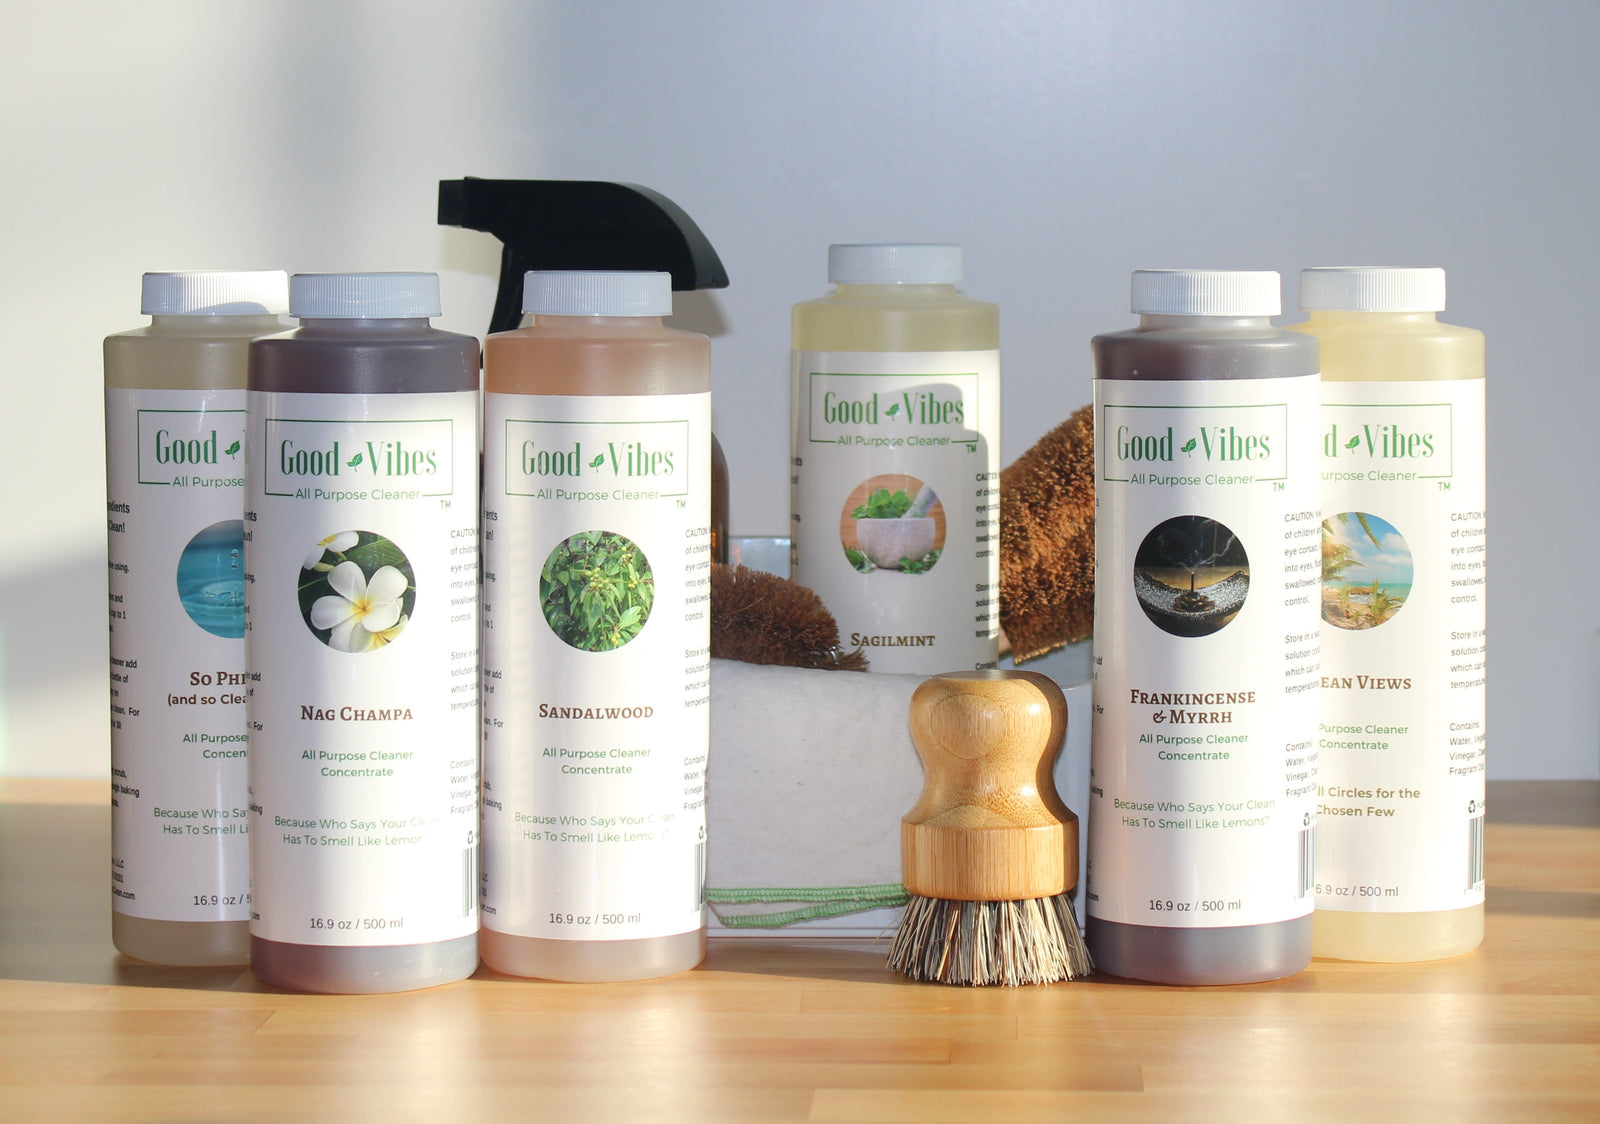 5L Cleenly Pet Carpet Shampoo Cleaner Solution Citrus Splash Fragrance